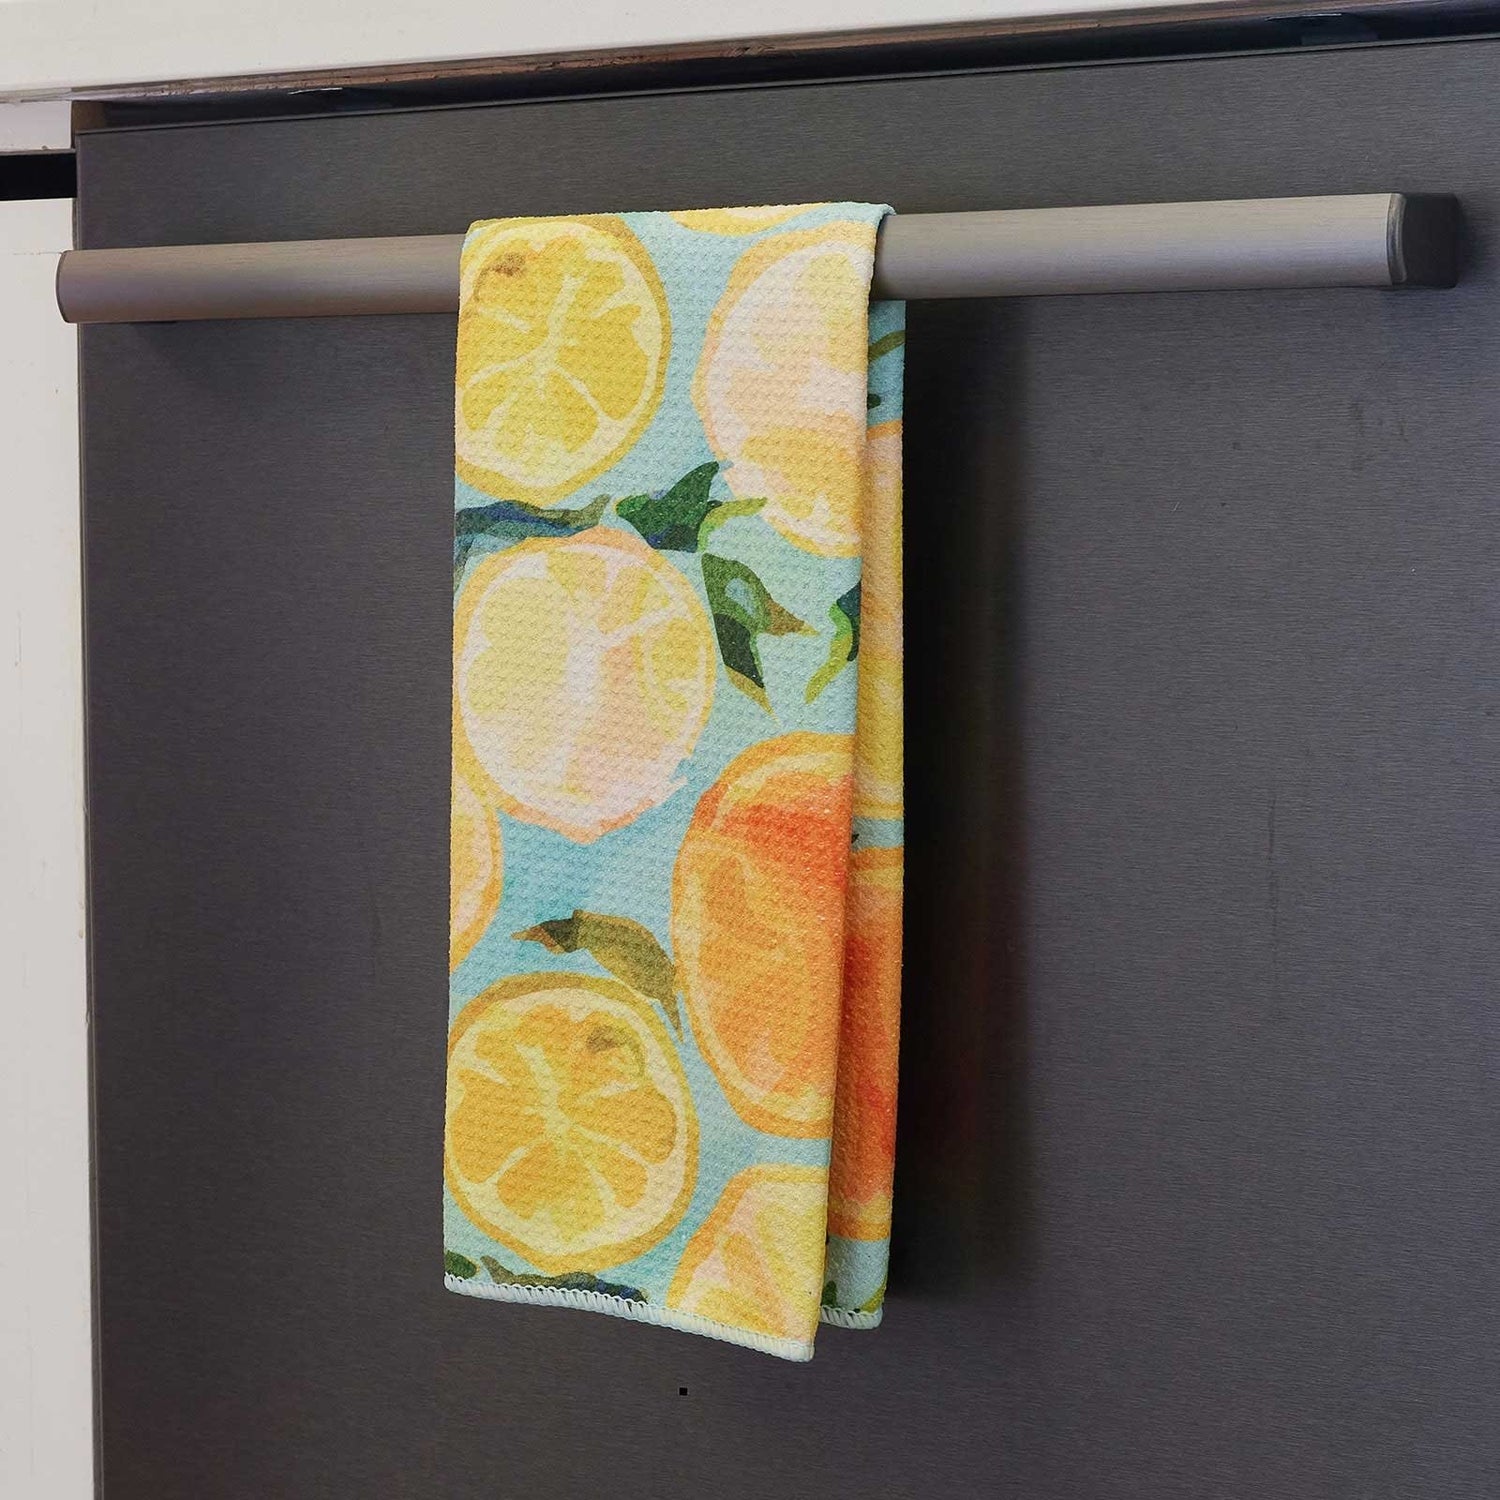 New Kitchen Towel Prints Have Arrived! - Rock Flower Paper